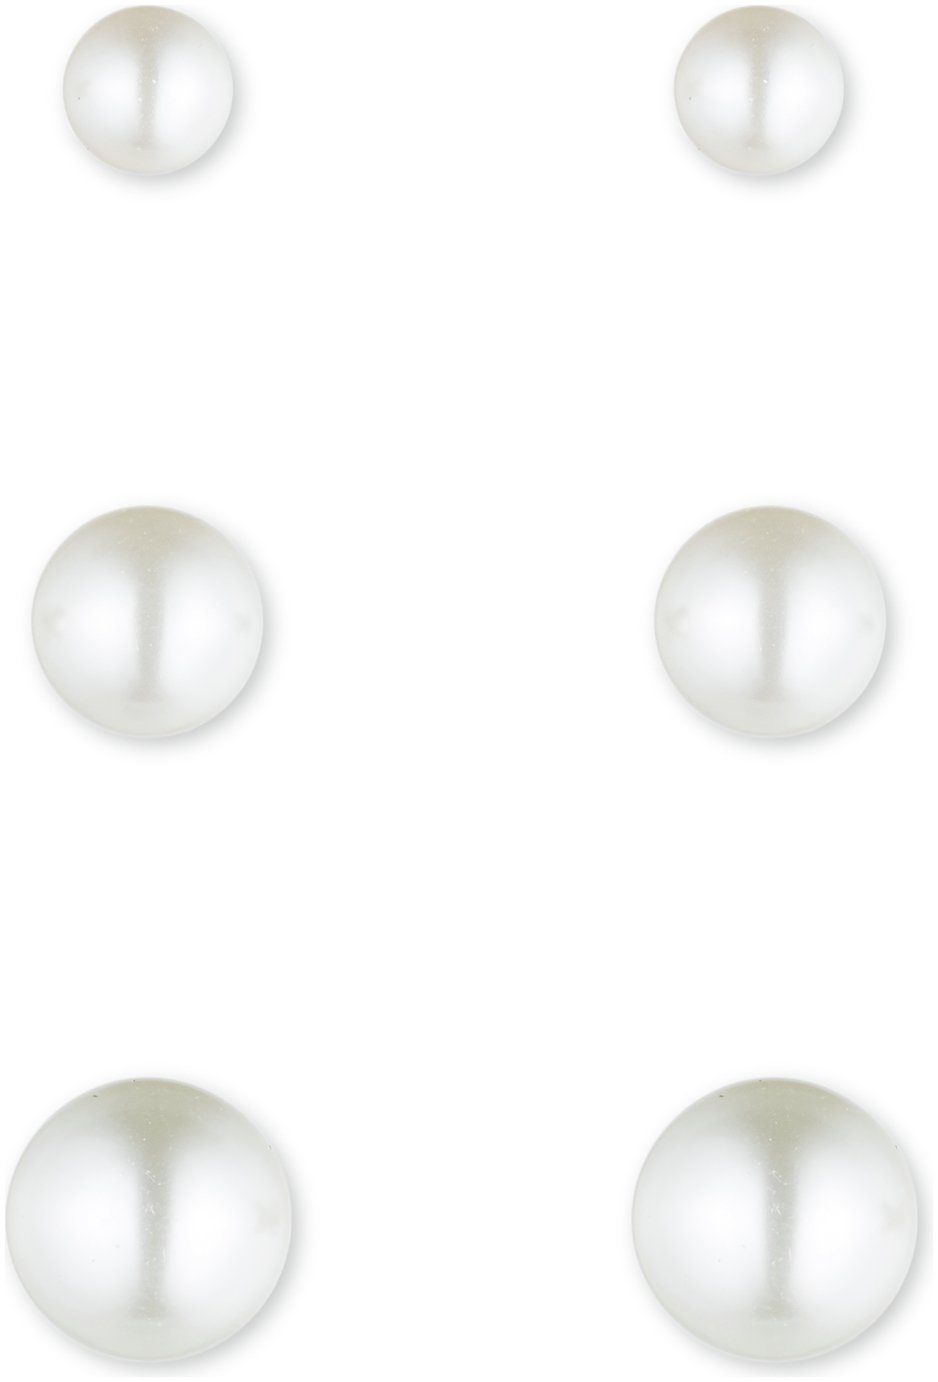 Anne Klein Faux Pearl Stud Earrings - Set of 3